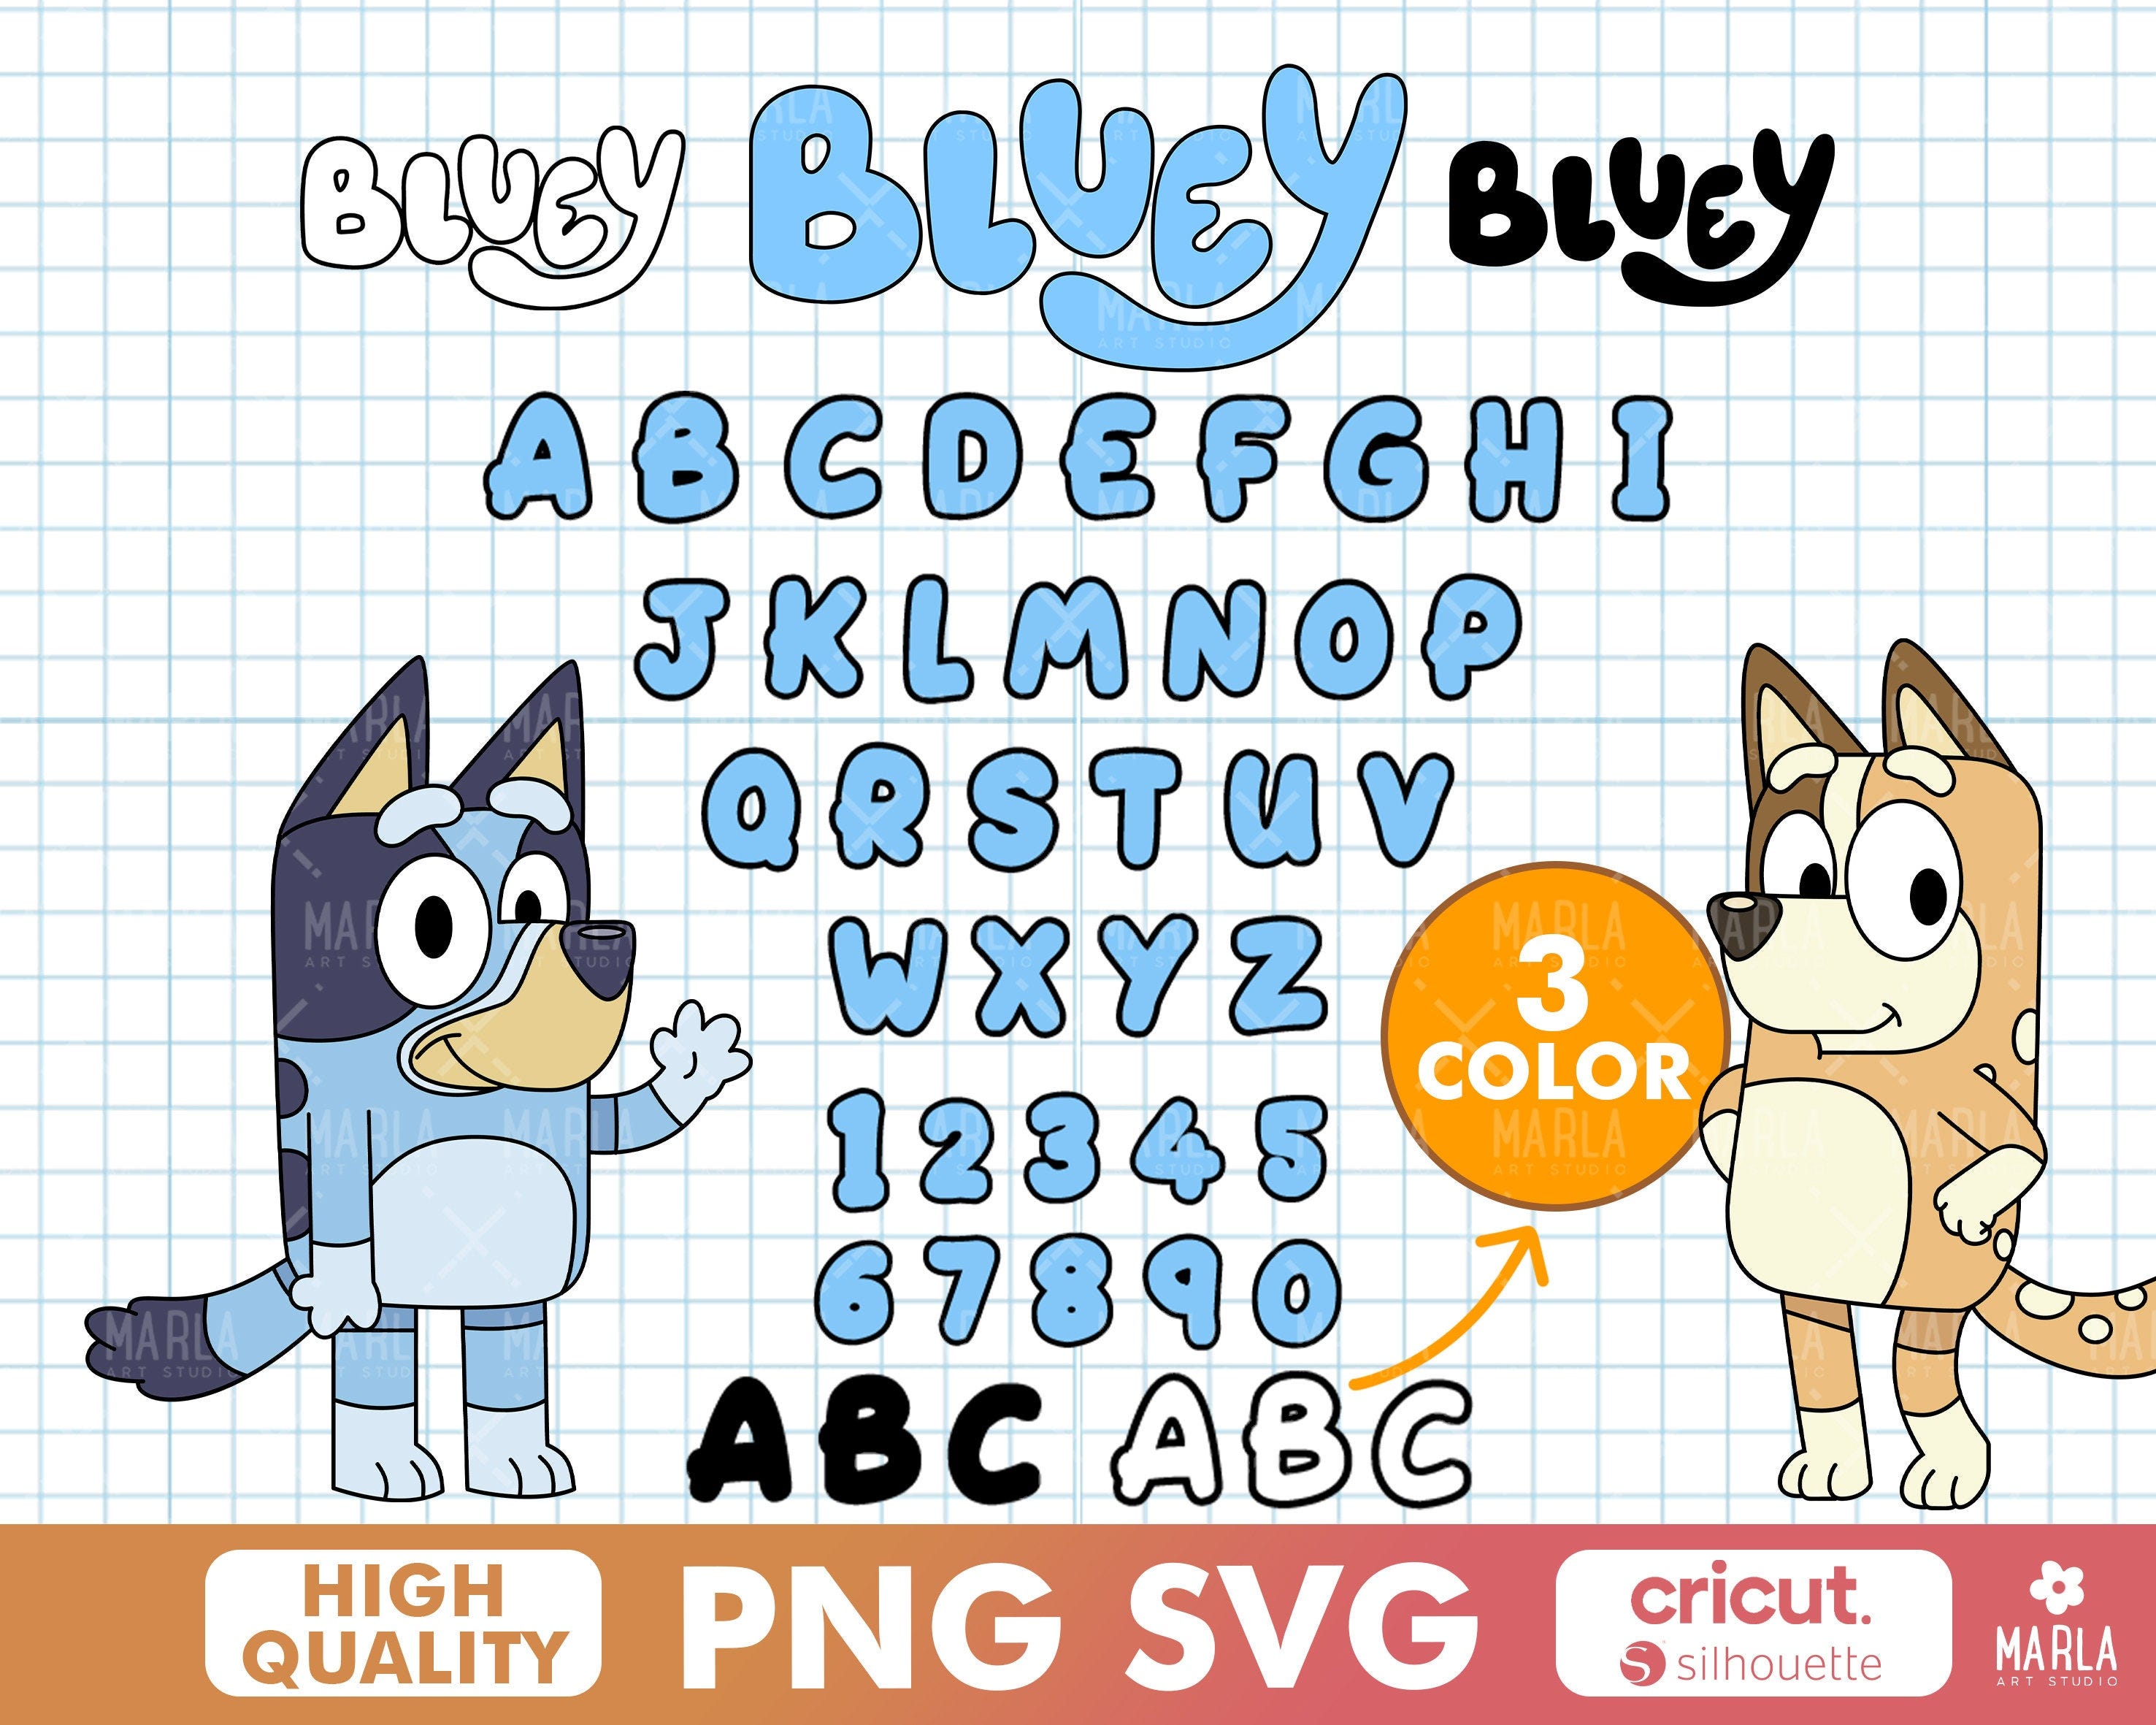 Blue Dog Font Pack, Blue Dog Alphabet, Blue Dog SVG, Kids Font, Digital Font Download, TTF, Cricut Font, Birthday Letters, Numbers